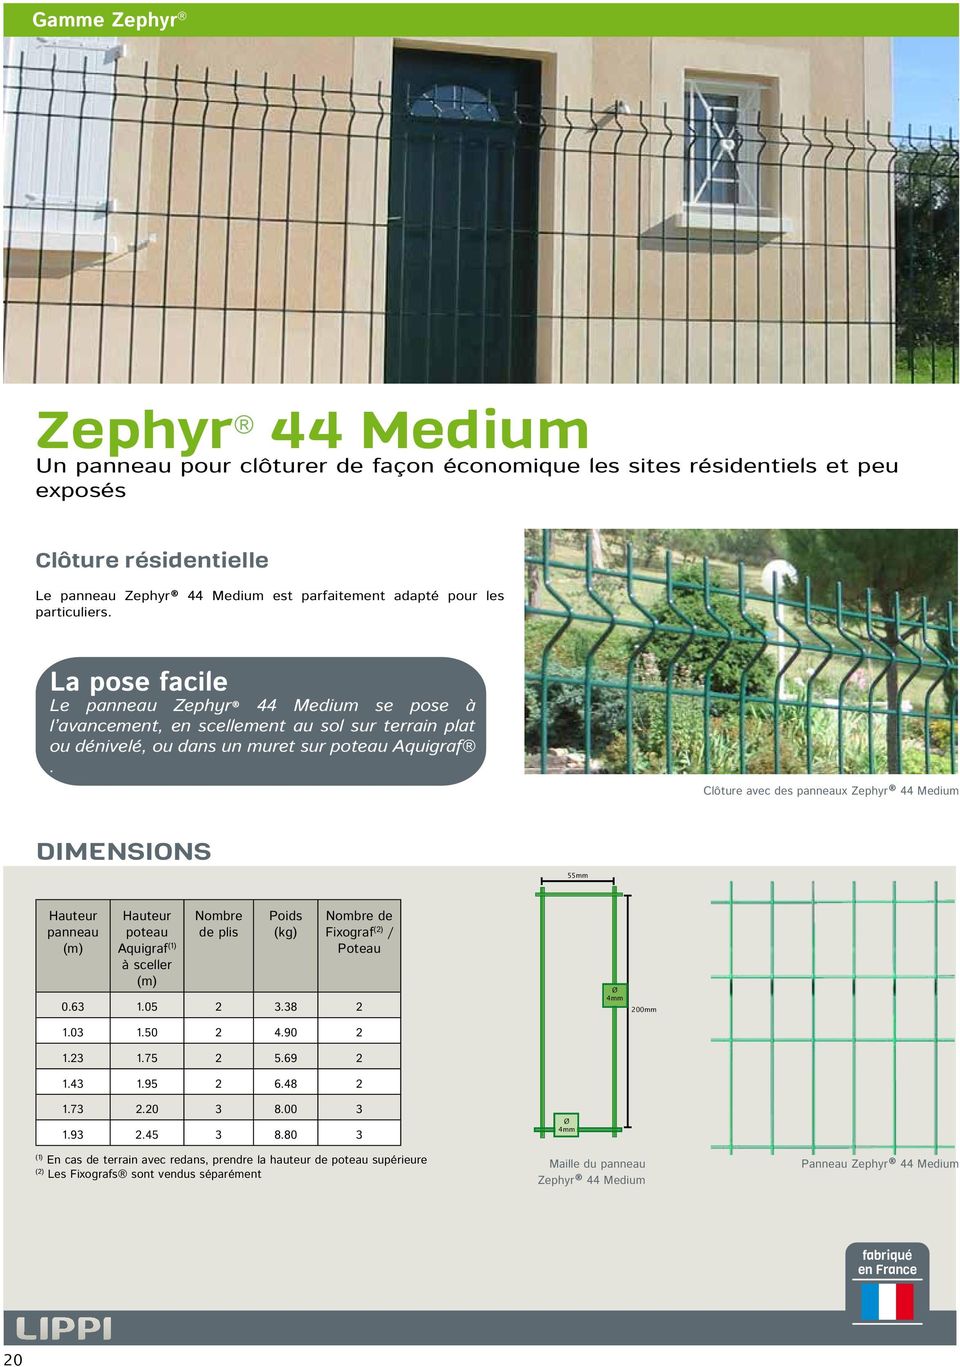 Clôture avec des panneaux Zephyr 44 Medium Dimensions 55mm Hauteur panneau (m) Hauteur poteau Aquigraf (1) à sceller (m) Nombre de plis Poids (kg) Nombre de Fixograf (2) / Poteau 0.63 1.05 2 3.38 2 1.